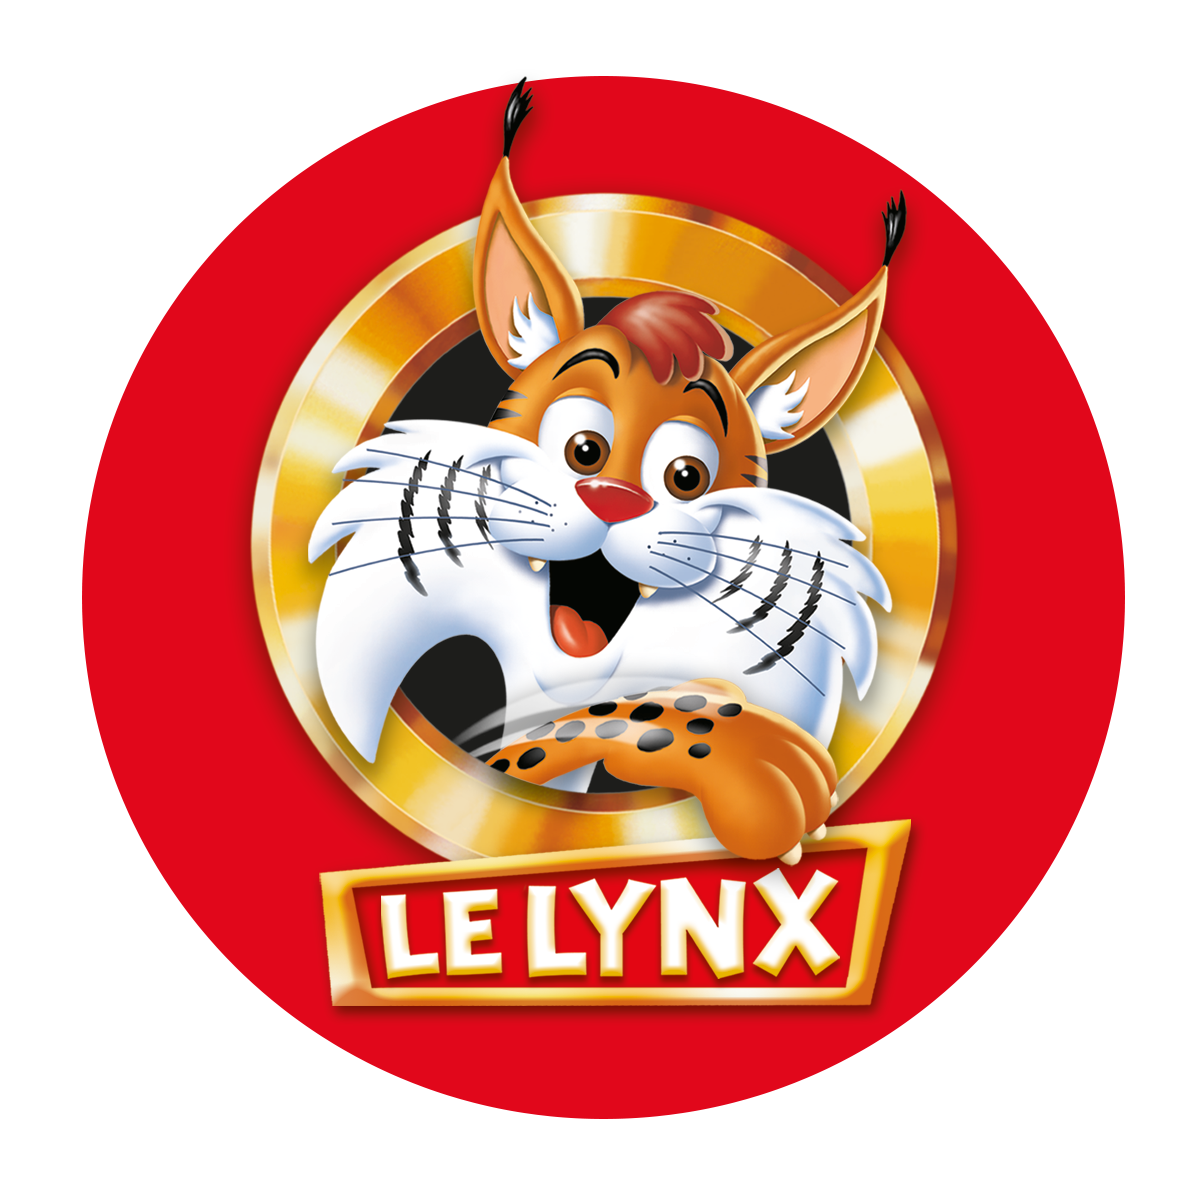 Mon premier lynx - premier jeu de société Educa Borras